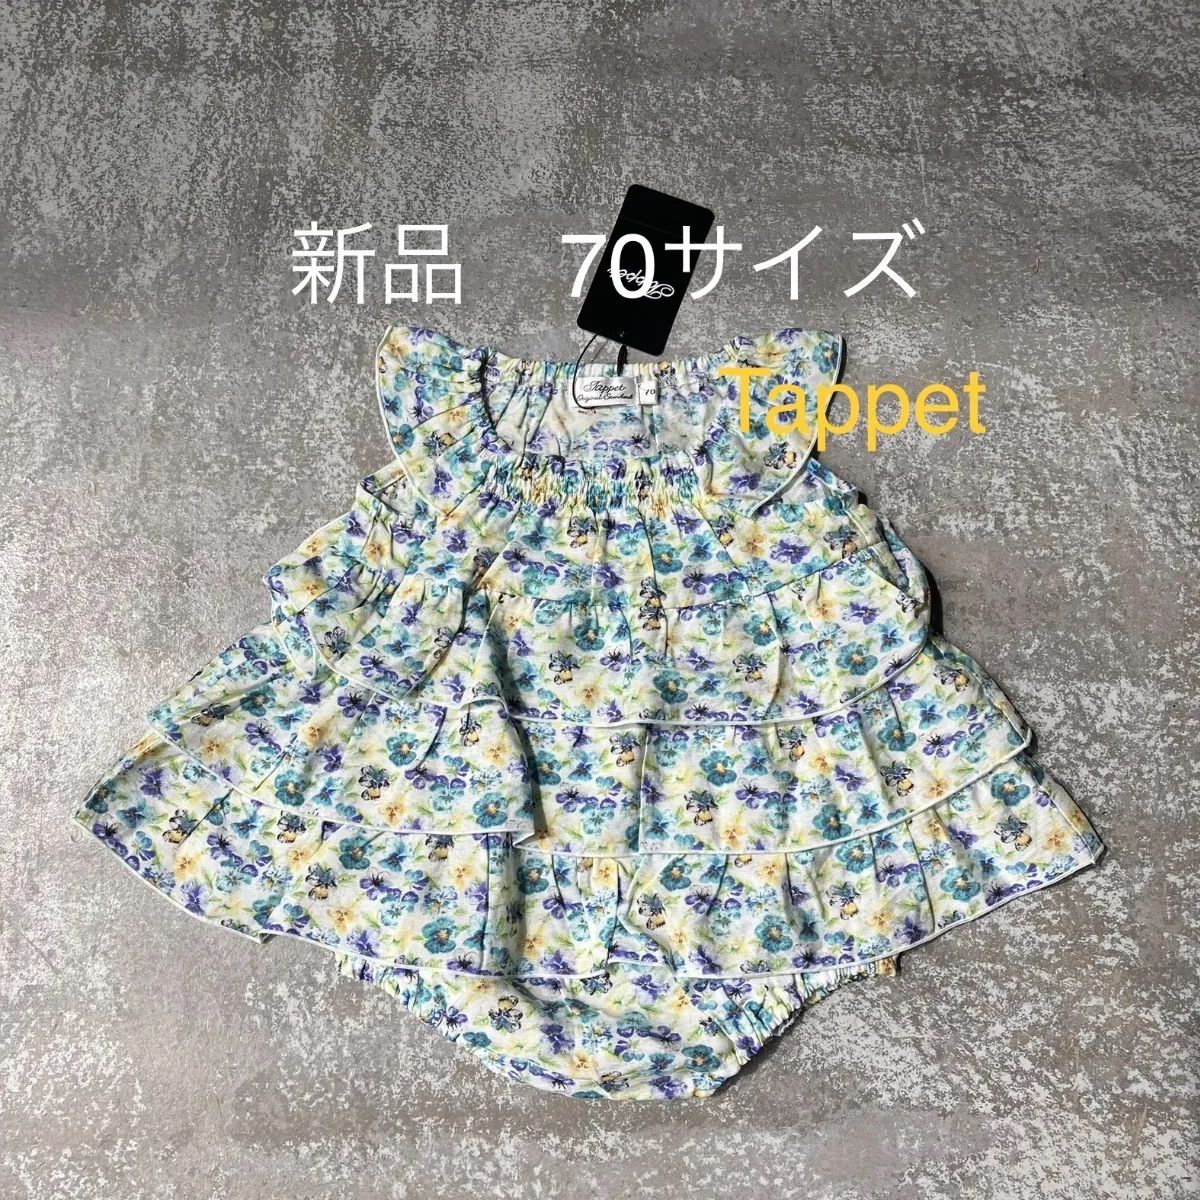 【新品】Tappet フリルロンパース 70サイズ